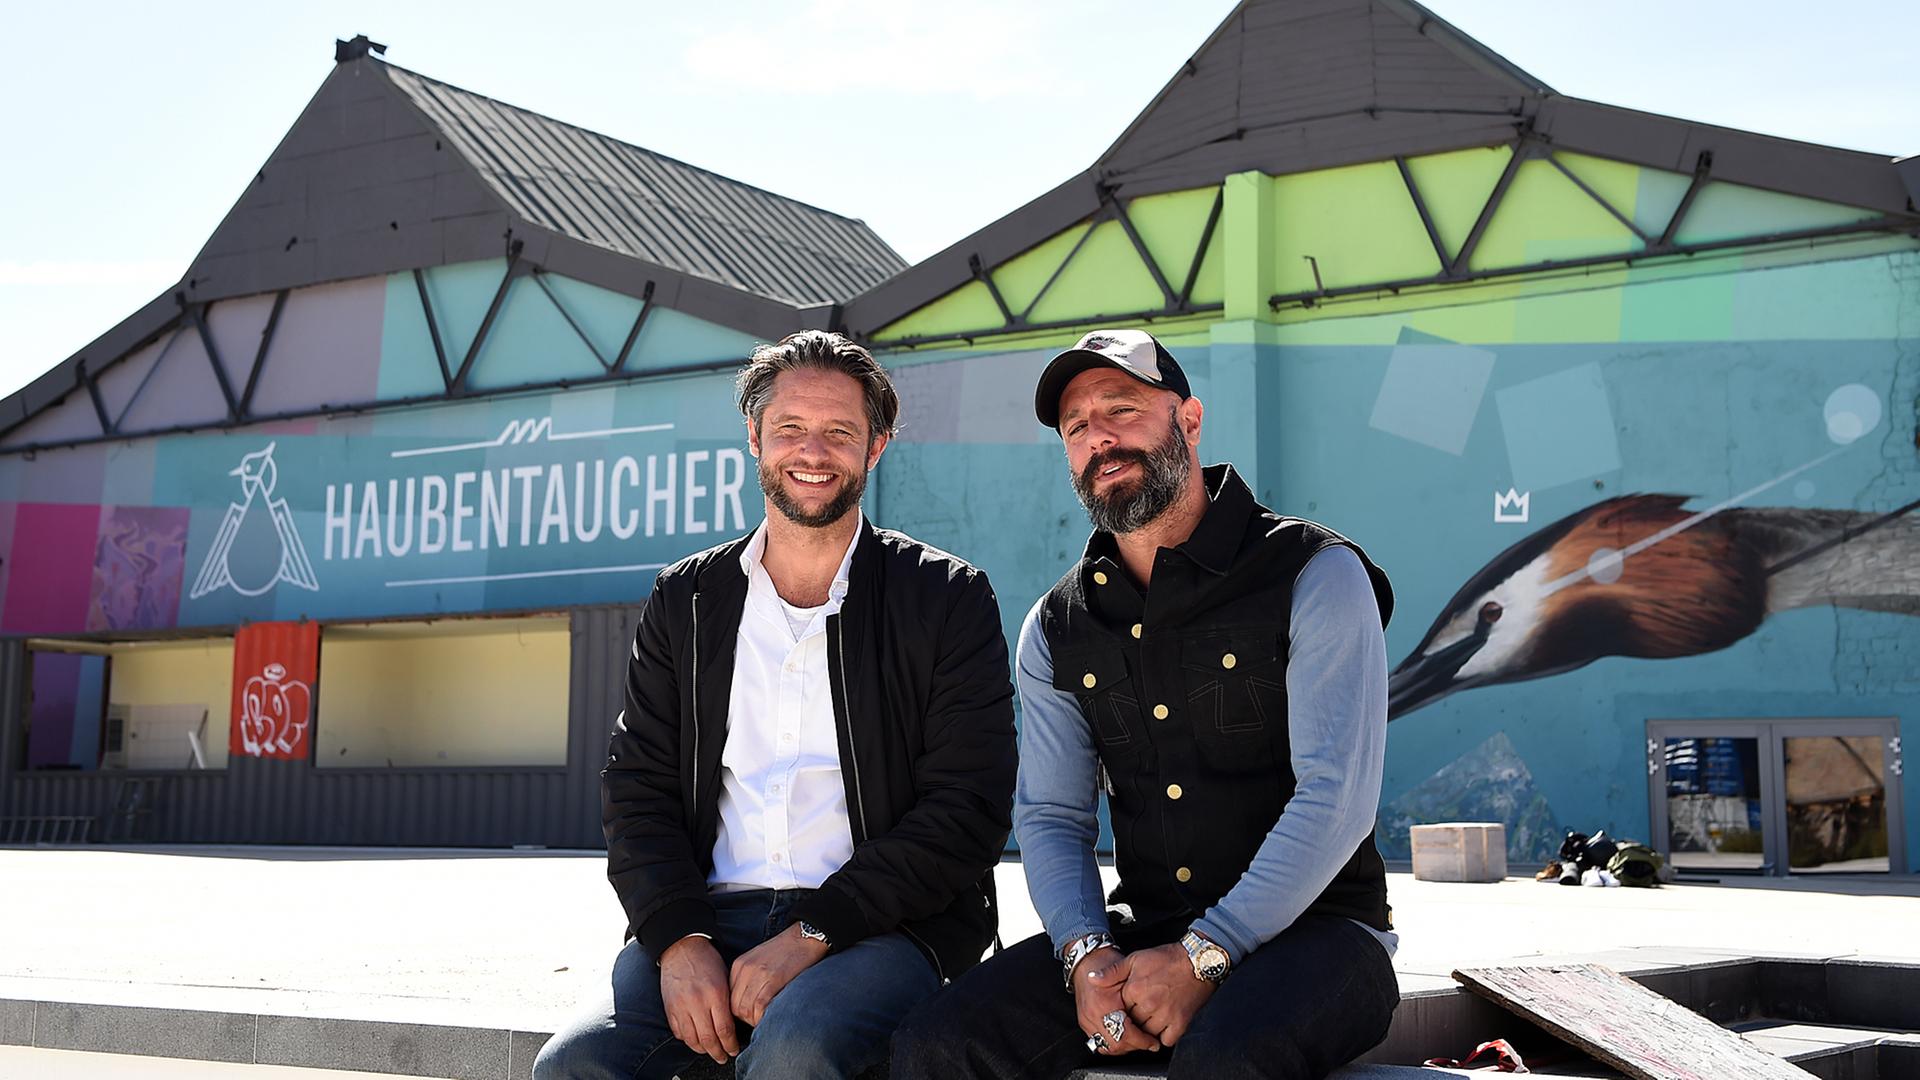 Clubetreiber Jan Denecke (l) und Alexis Kalpakidis vor ihrem Pool-Club "Haubentaucher" auf dem Berliner RAW-Gelände